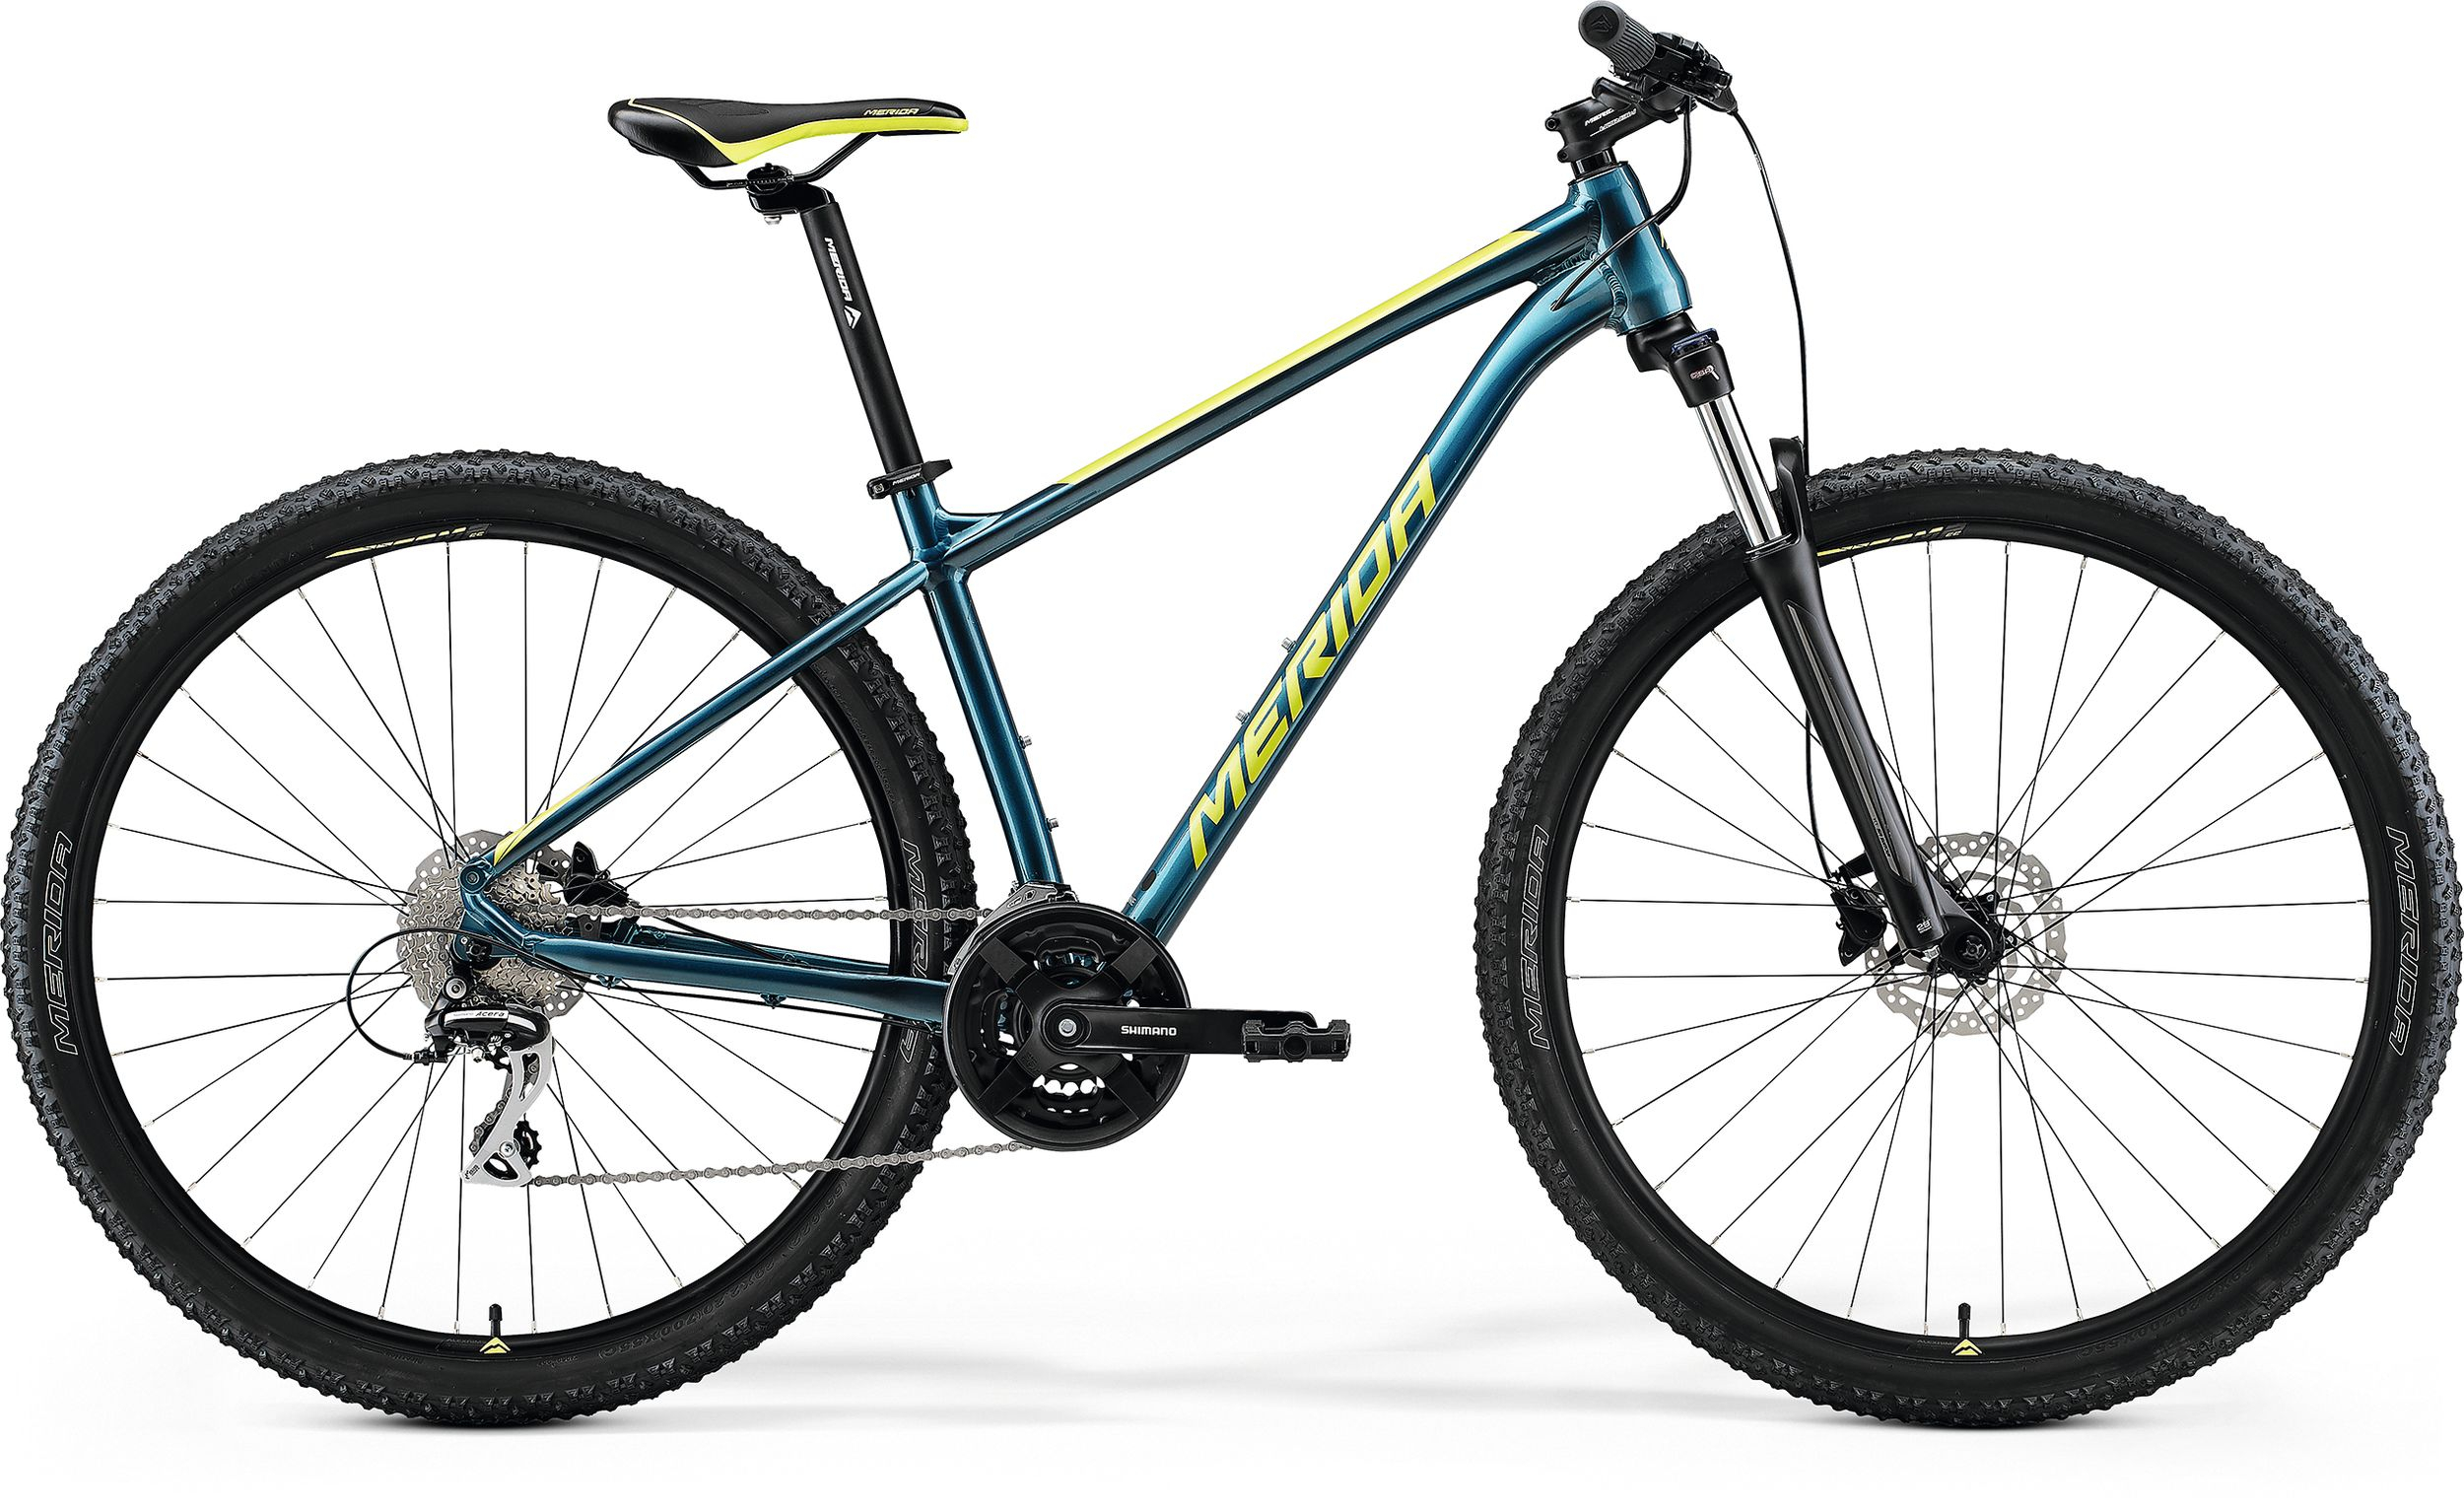 Bicicleta de munte pentru barbati Merida Big.Seven 20-3X marimea L Albastru Turcoaz/Verde Lime 2022